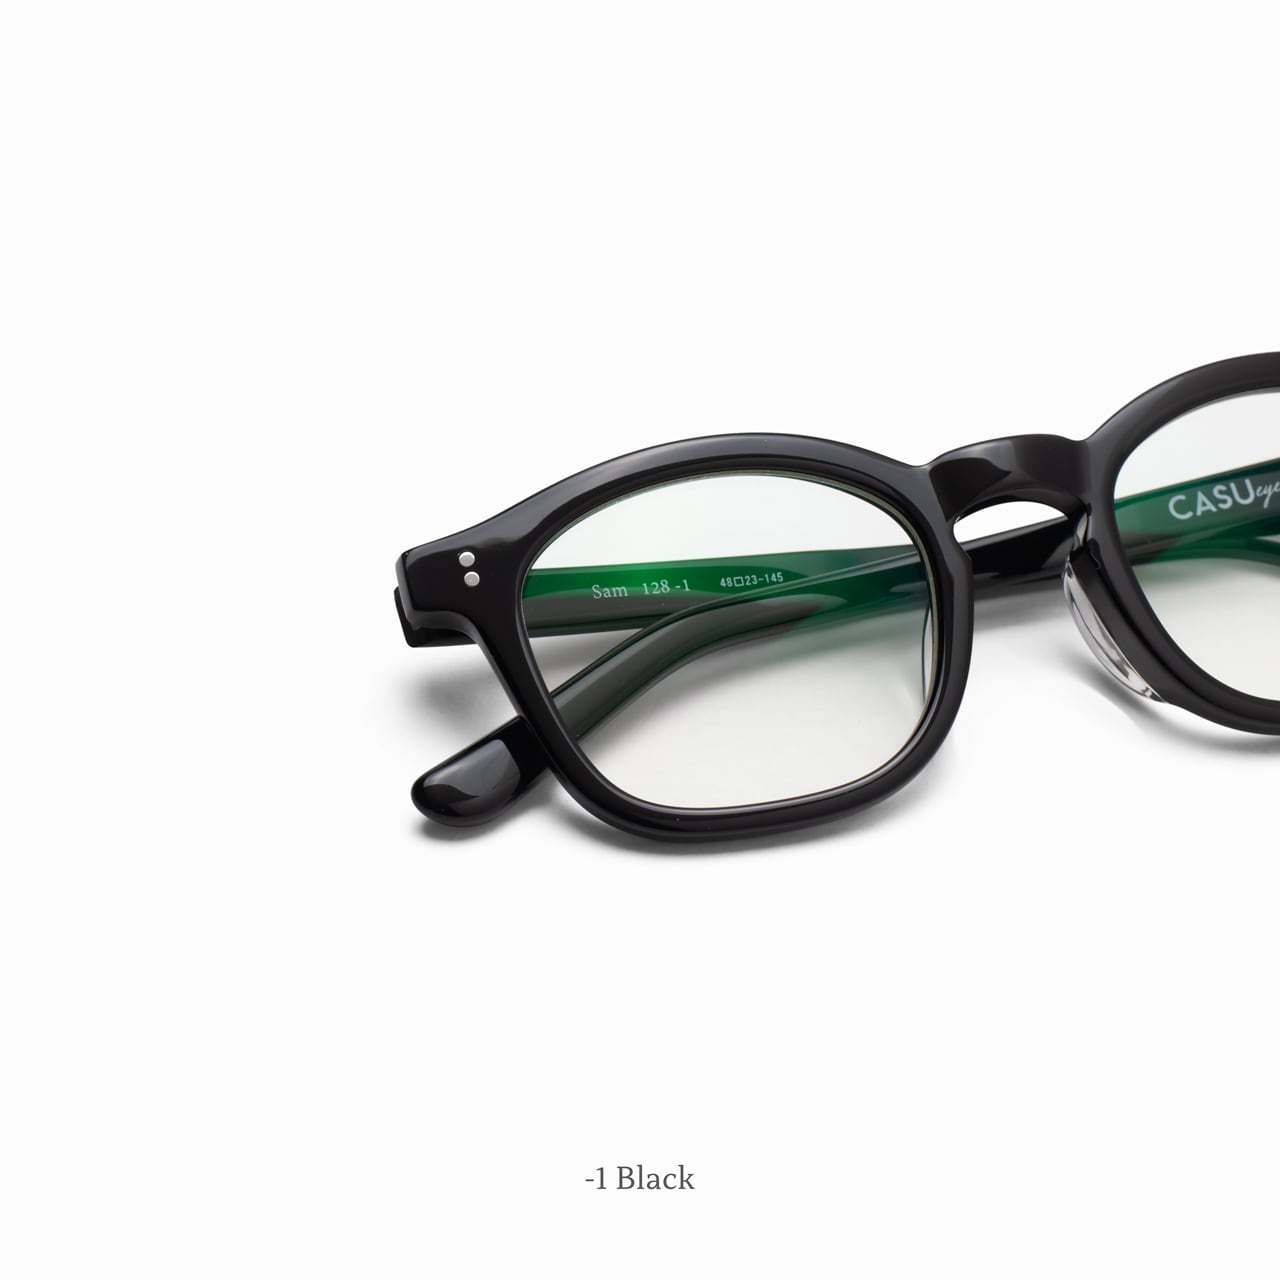 Sam 128 ｻﾑ | CASU eyewear